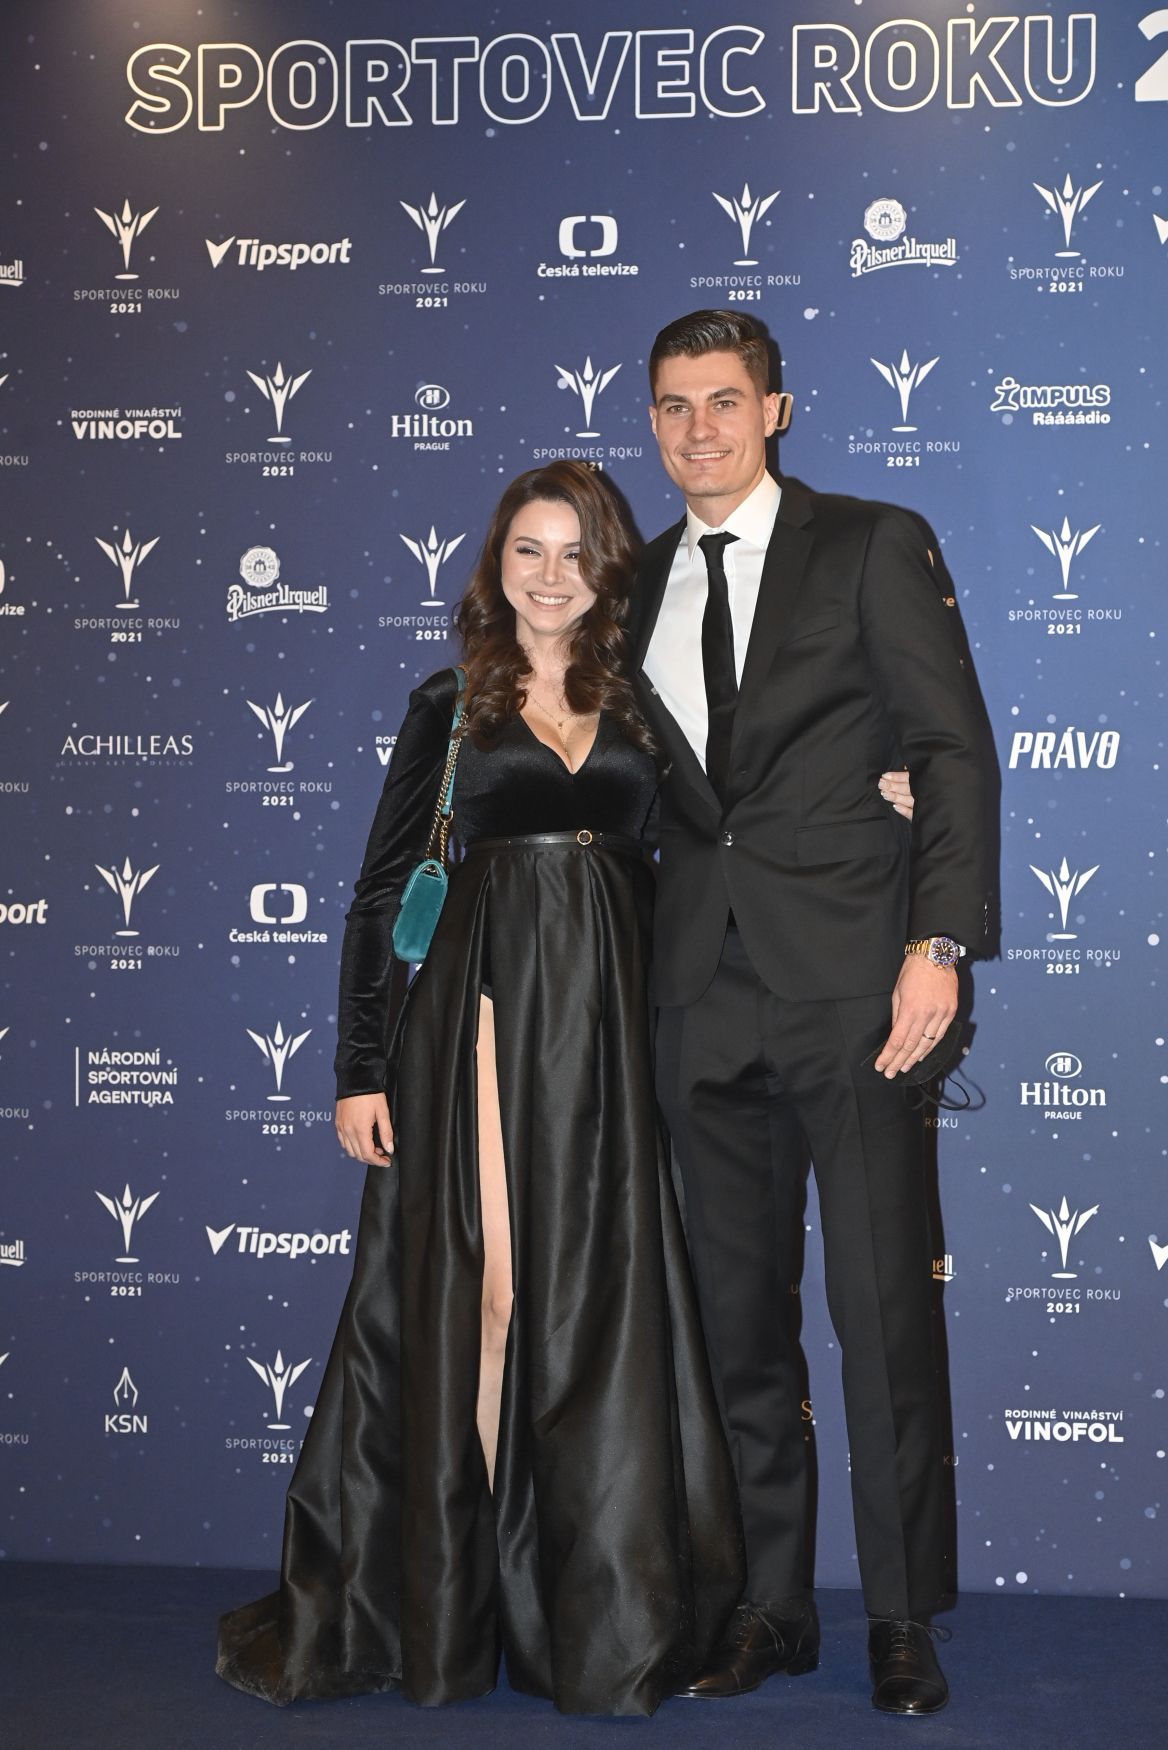 Fotbalista Patrik Schick s manželkou Hanou Schickovou na vyhlášení ankety Sportovec roku 2021.